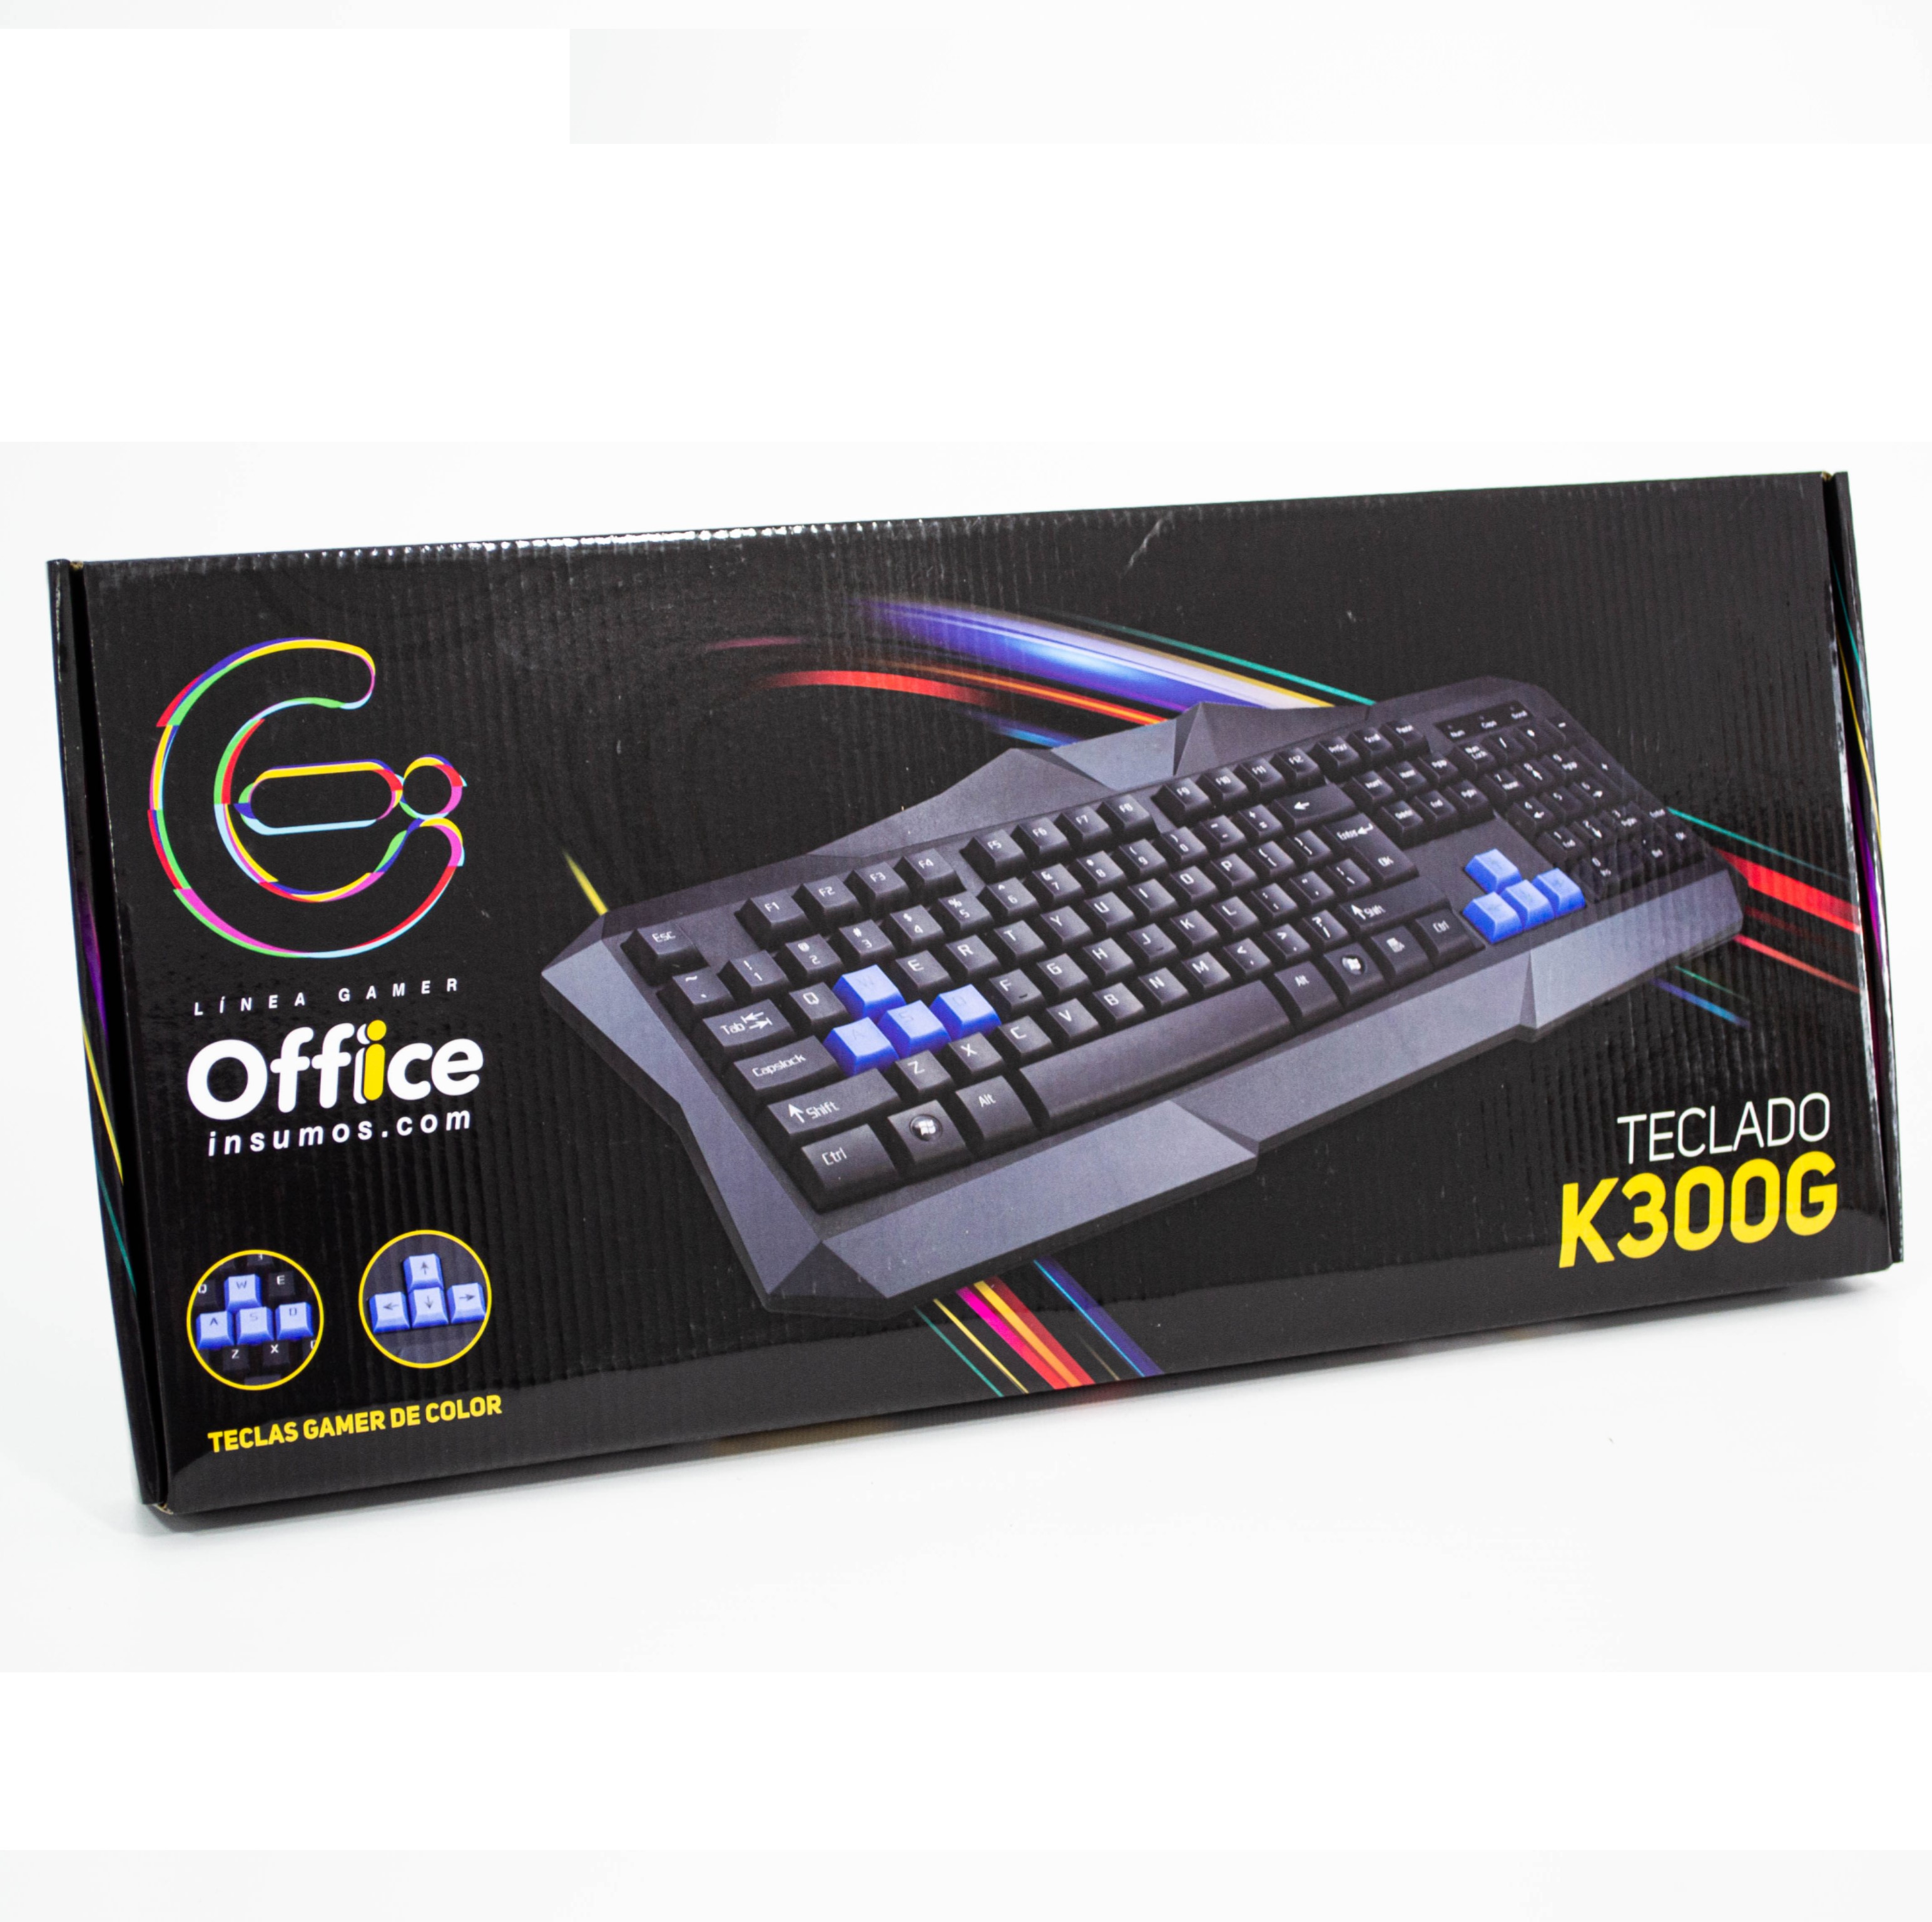 TECLADO USB GAMER OFFICE K300G